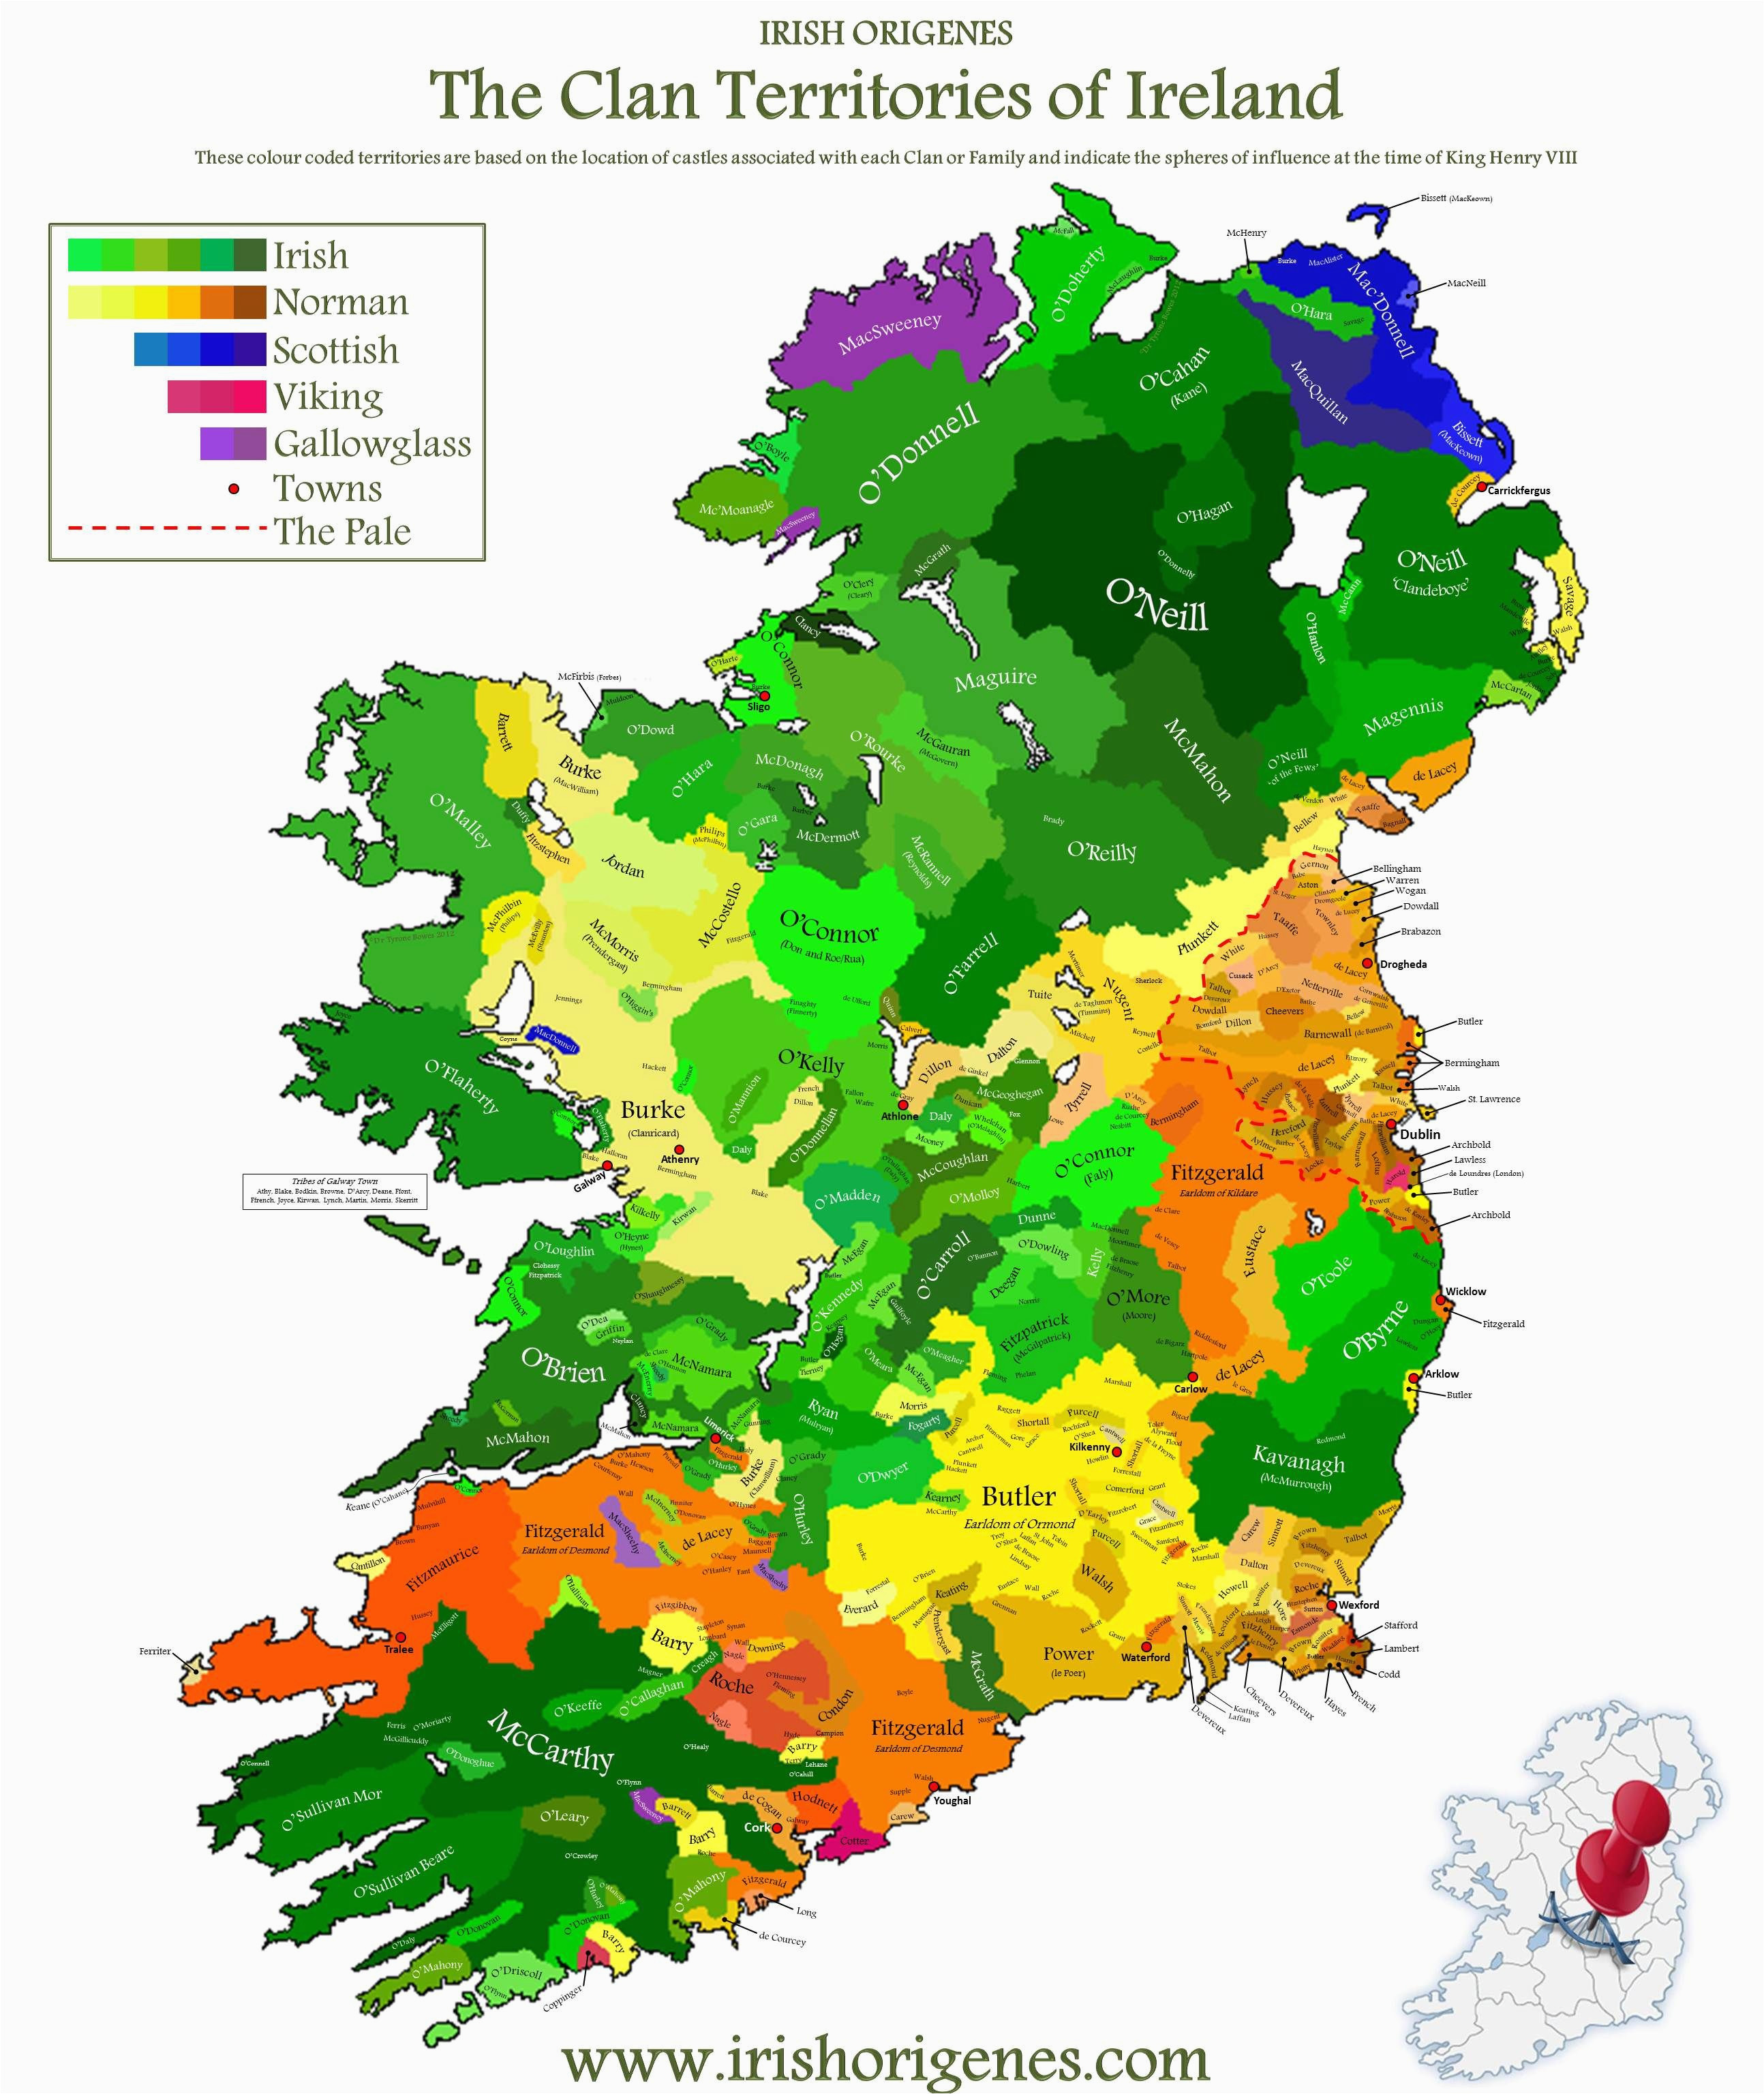 Bing Maps Ireland Dna Map Of Ireland Bing Images Geschichte Ireland Map